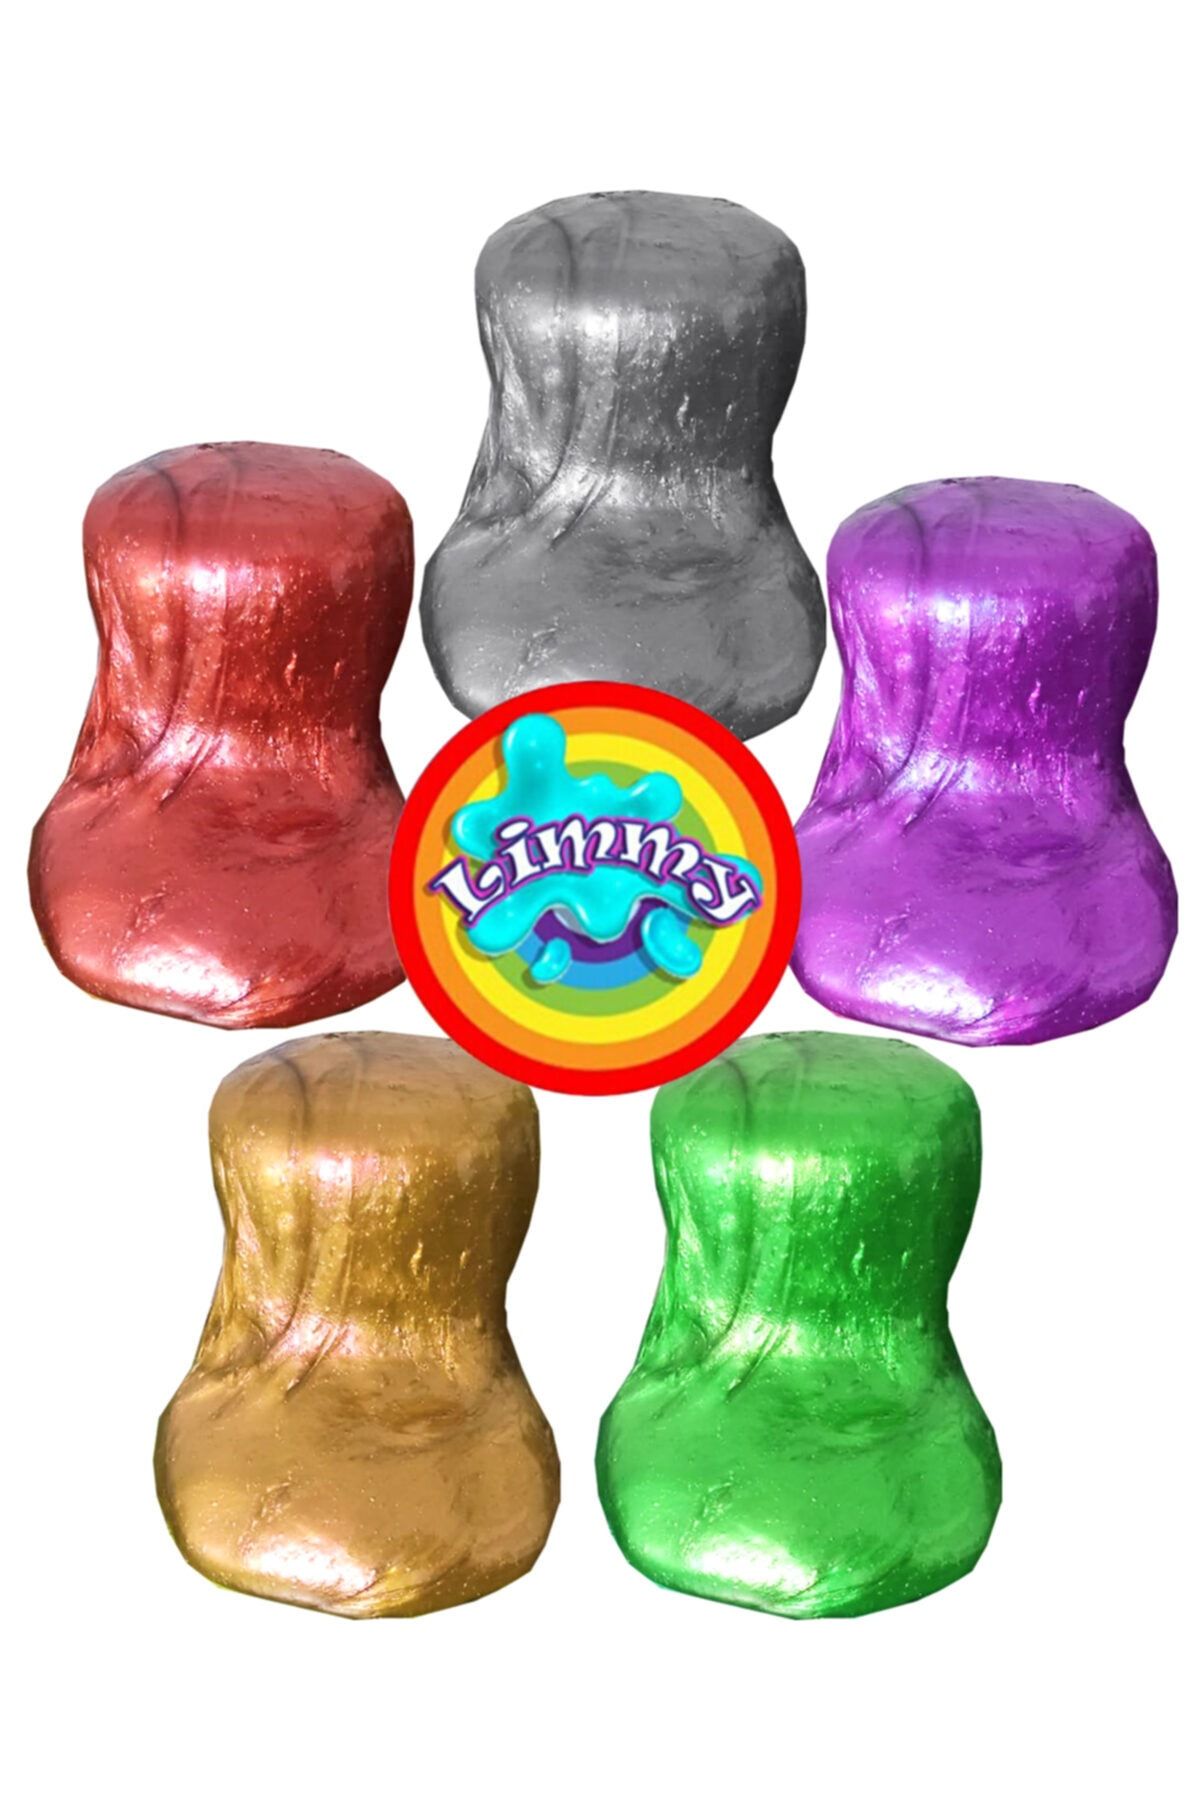 Limmy Slime Oyun Jeli Renkli Polymer Slime Eğitici Oyun Seti - 2 Adet